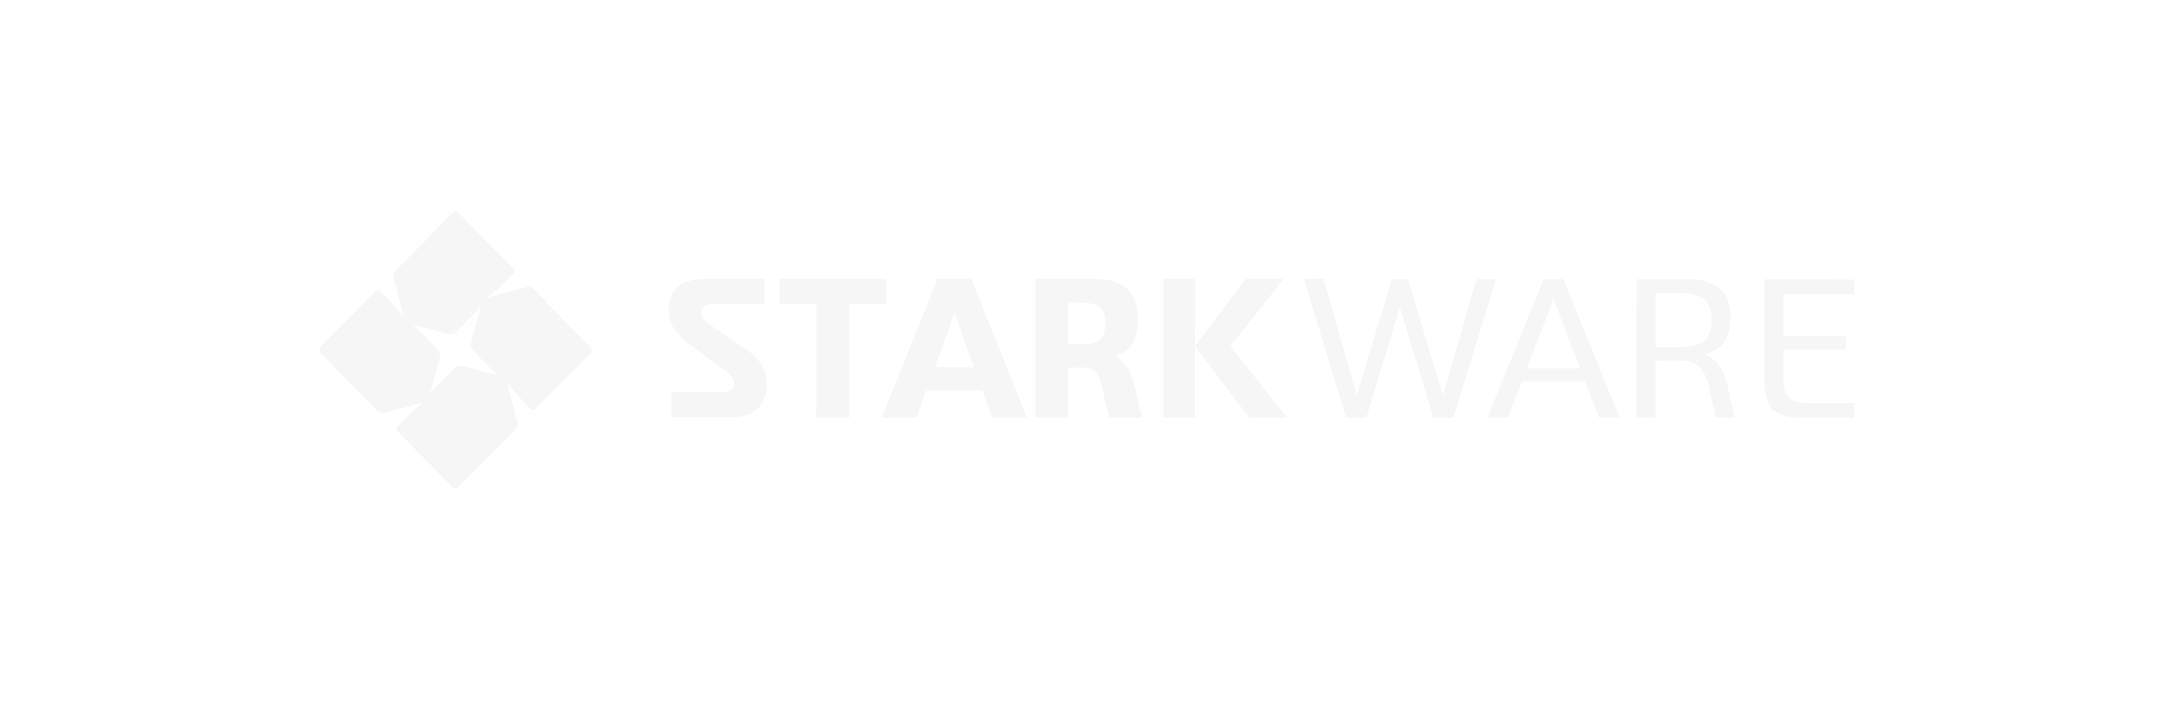 Starware